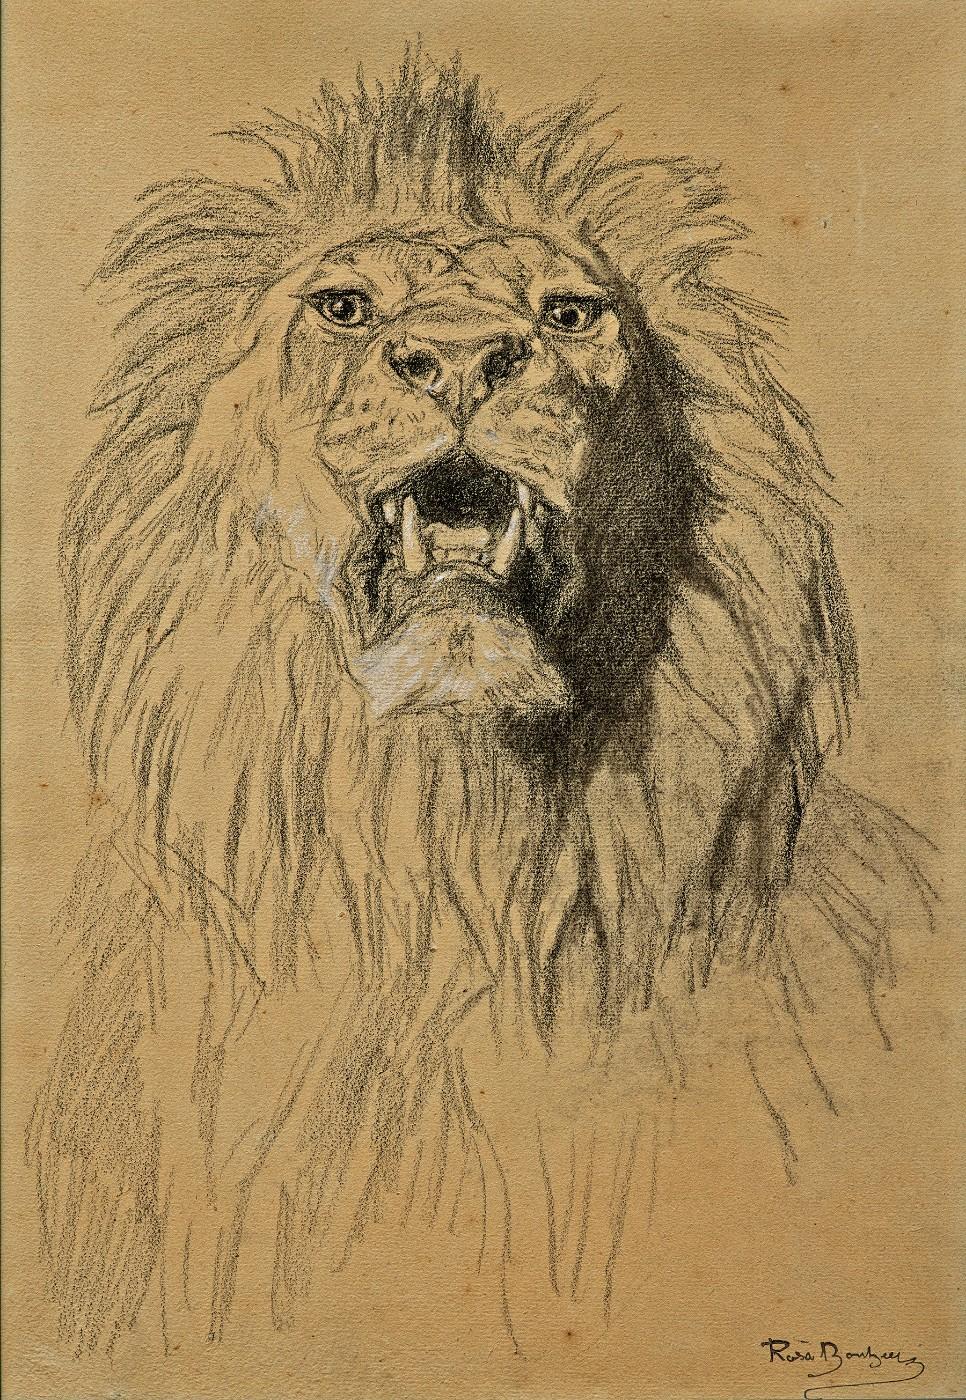 Rosa Bonheur, Lion's Head, c. 1880-1885